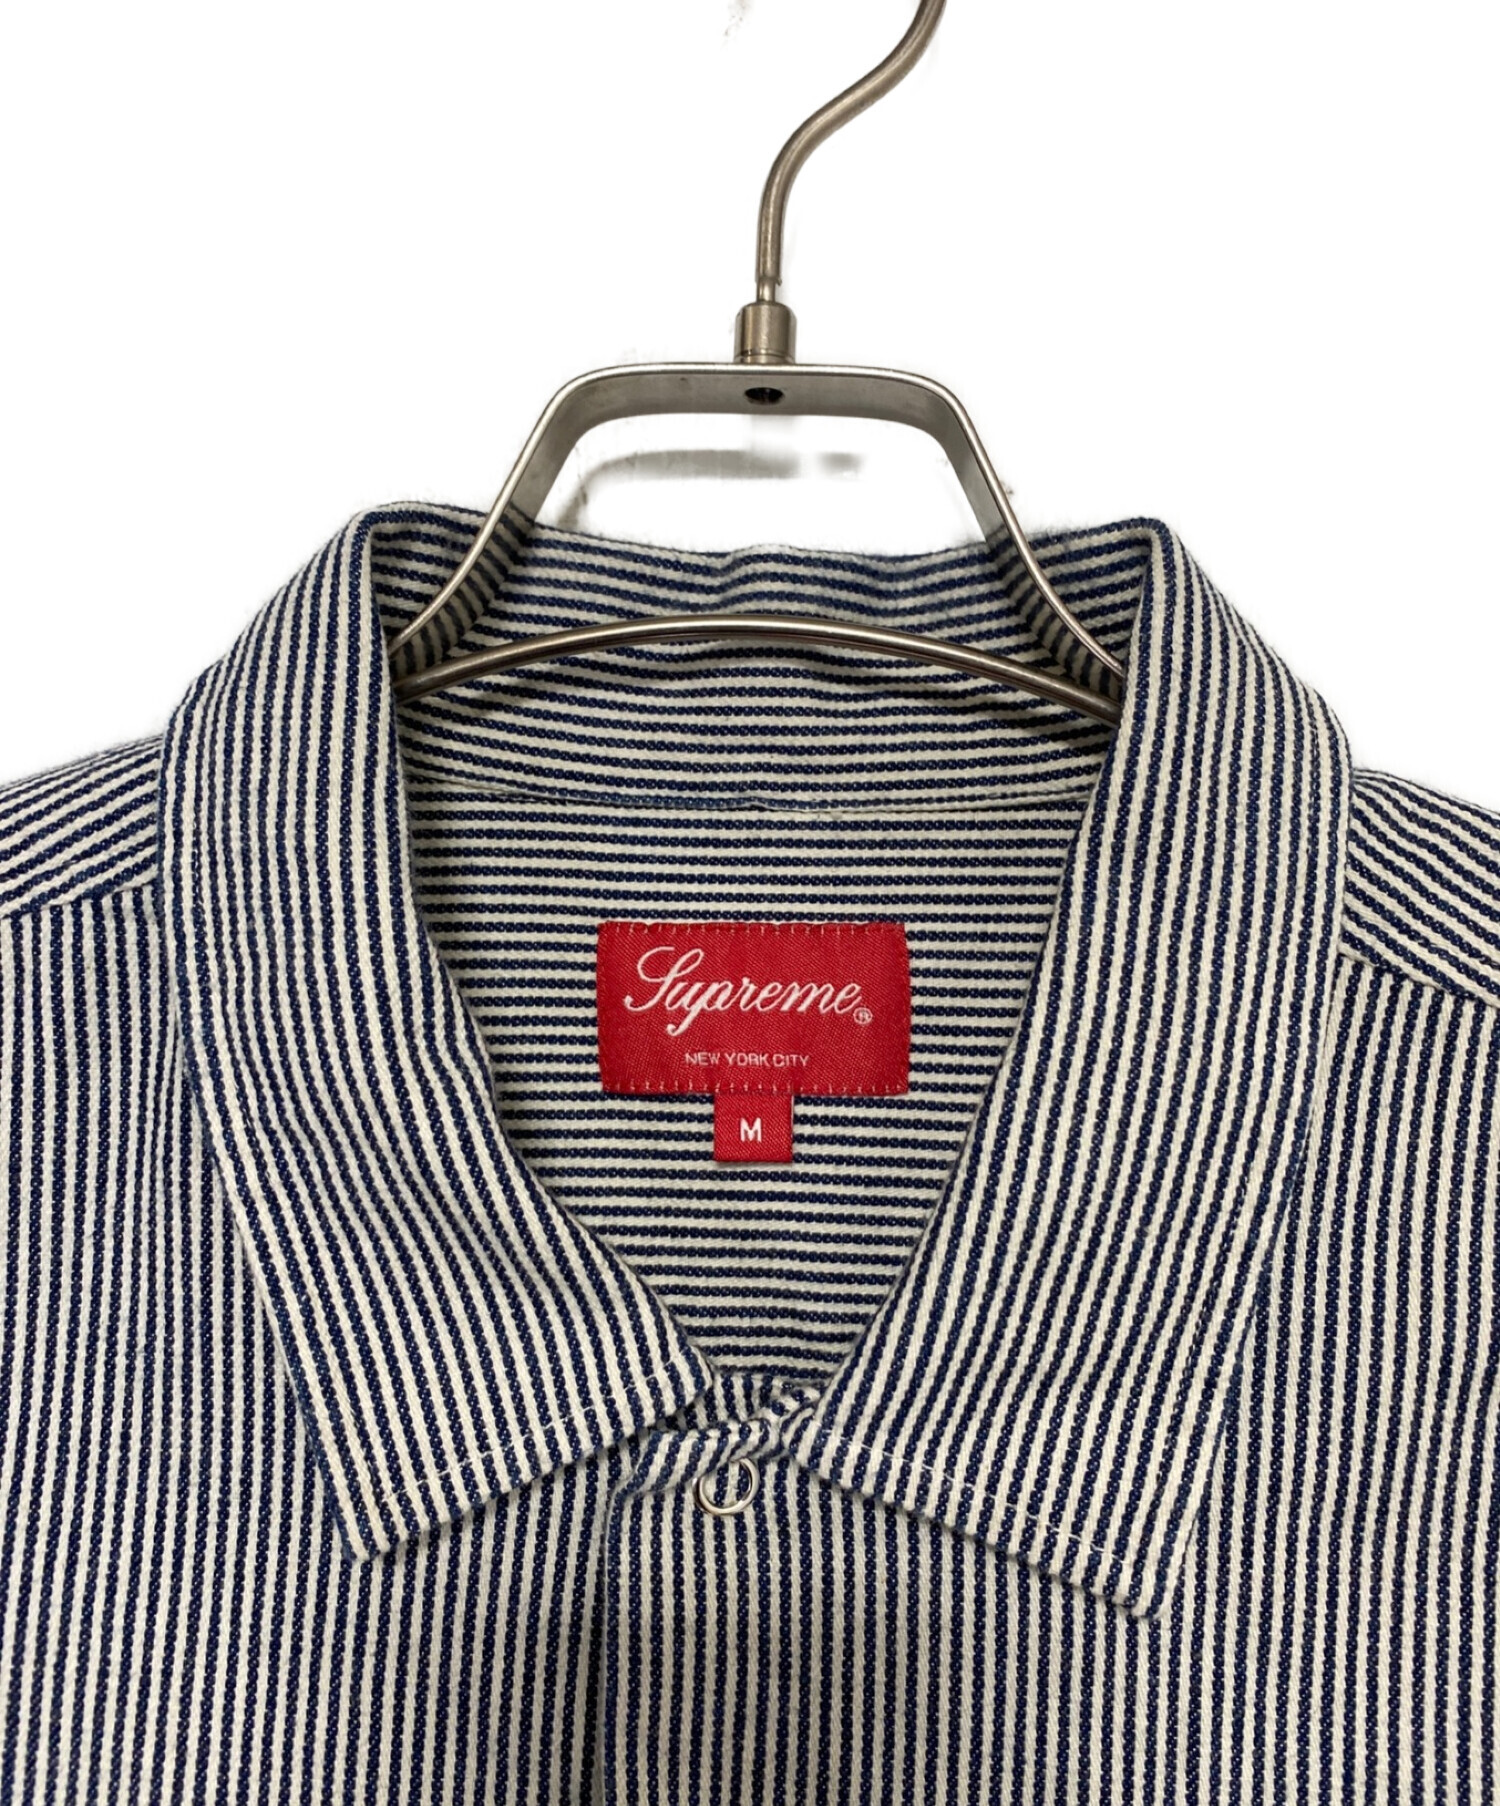 SUPREME (シュプリーム) Pin Up Work Shirt ブルー サイズ:M